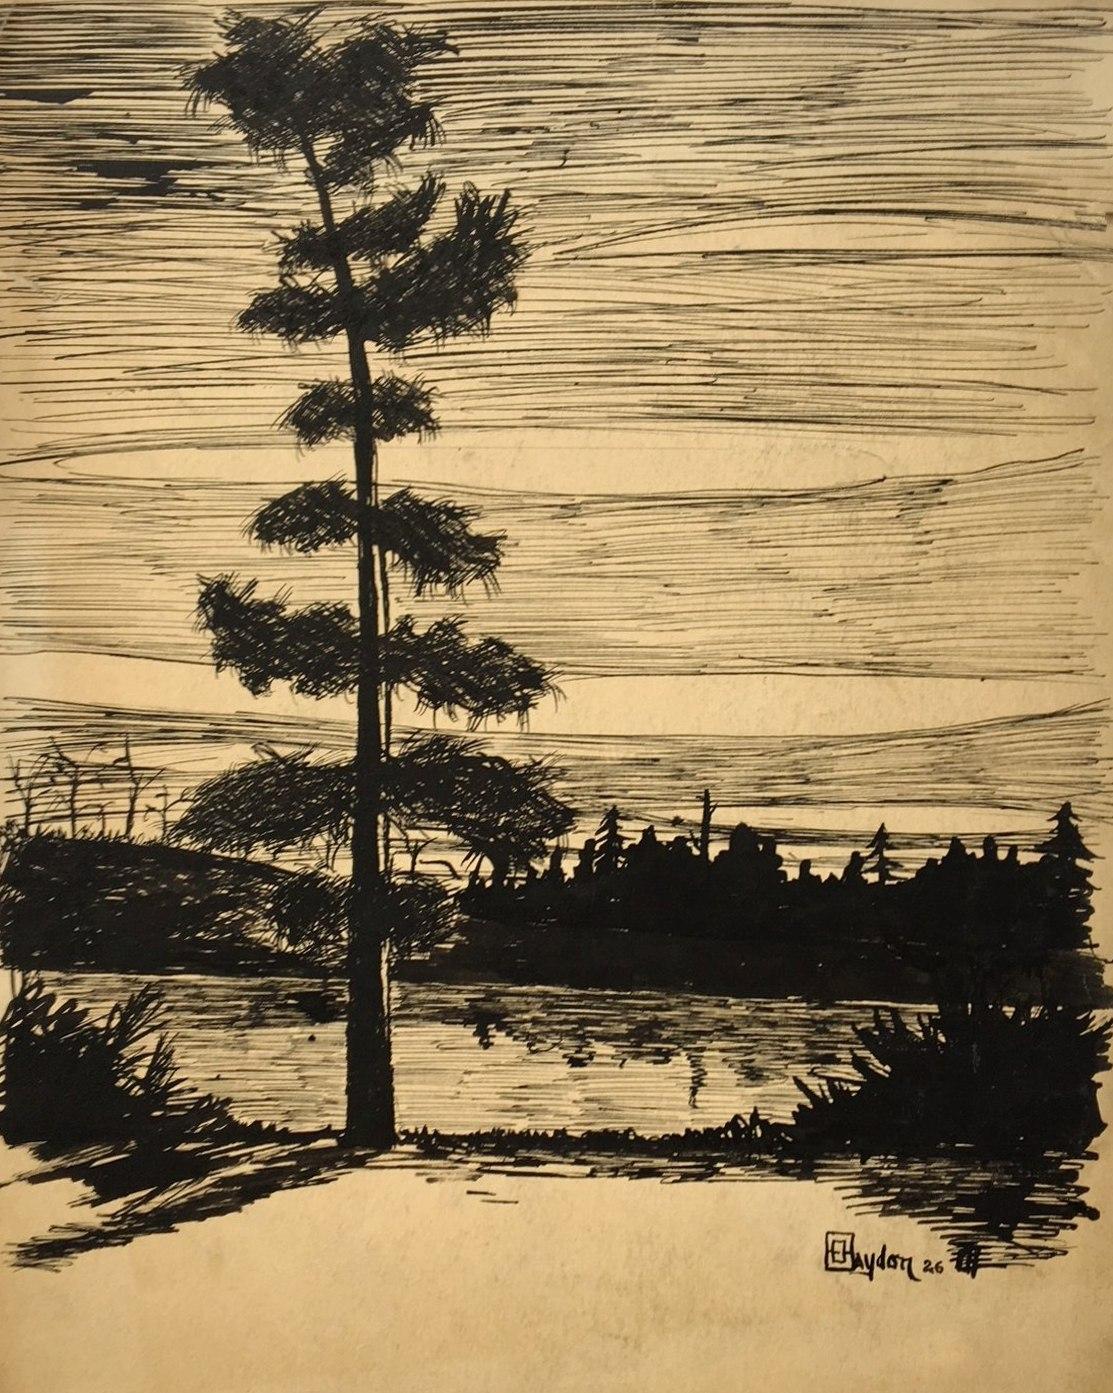 Eine Zeichnung des Künstlers Harold Haydon von 1926 mit Tinte auf Papier, die einen Zedernbaum und einen See im Norden zeigt.  

Harold Emerson Haydon wurde 1909 in Fort William, Ontario, Kanada, geboren.   Haydon kam 1917 mit seiner Familie nach